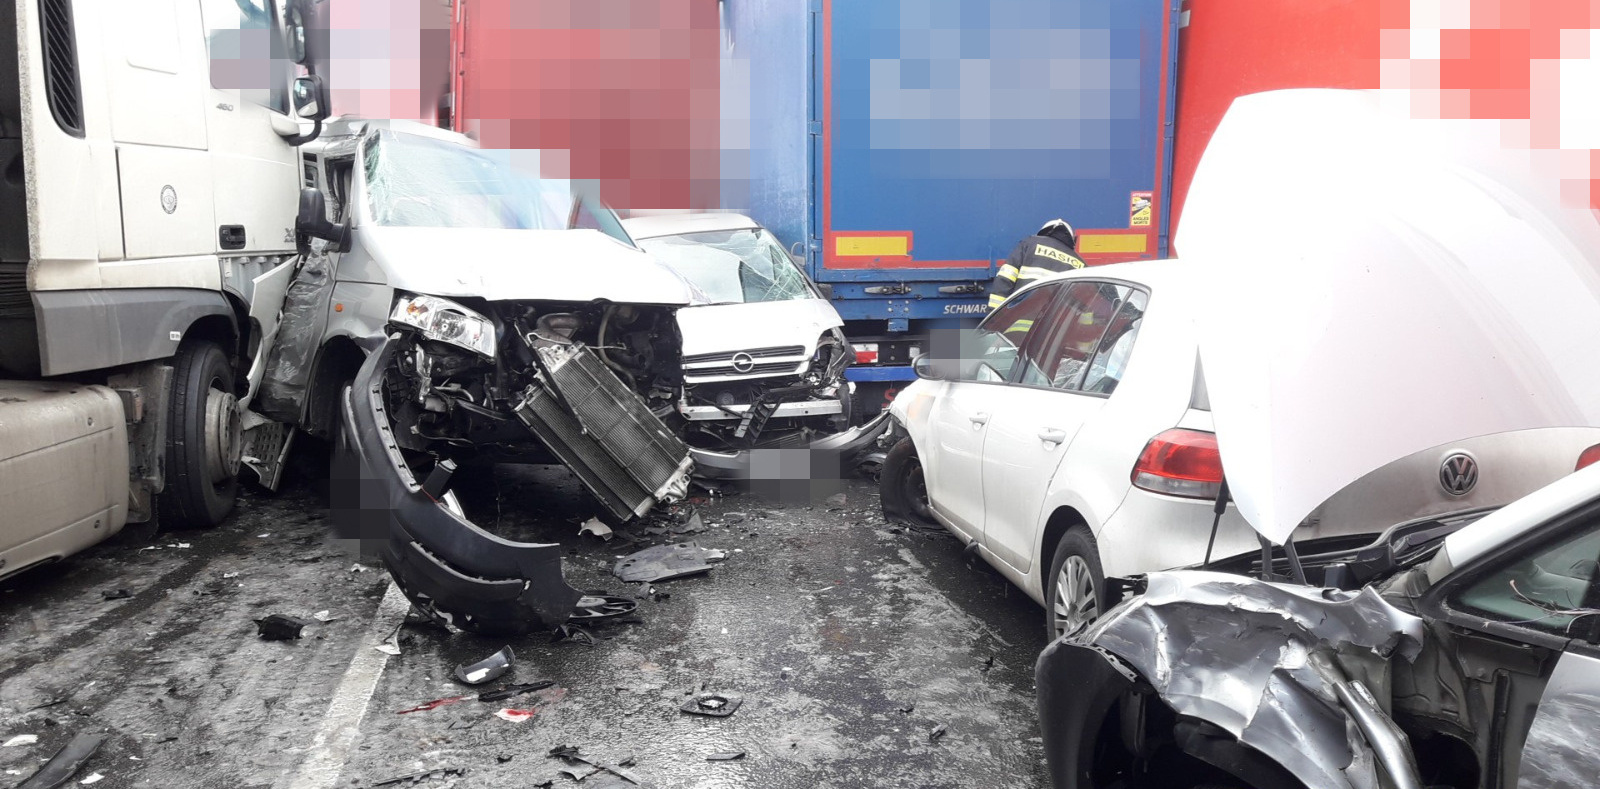 008 - Hromadná dopravní nehoda na dálnici D5.jpg